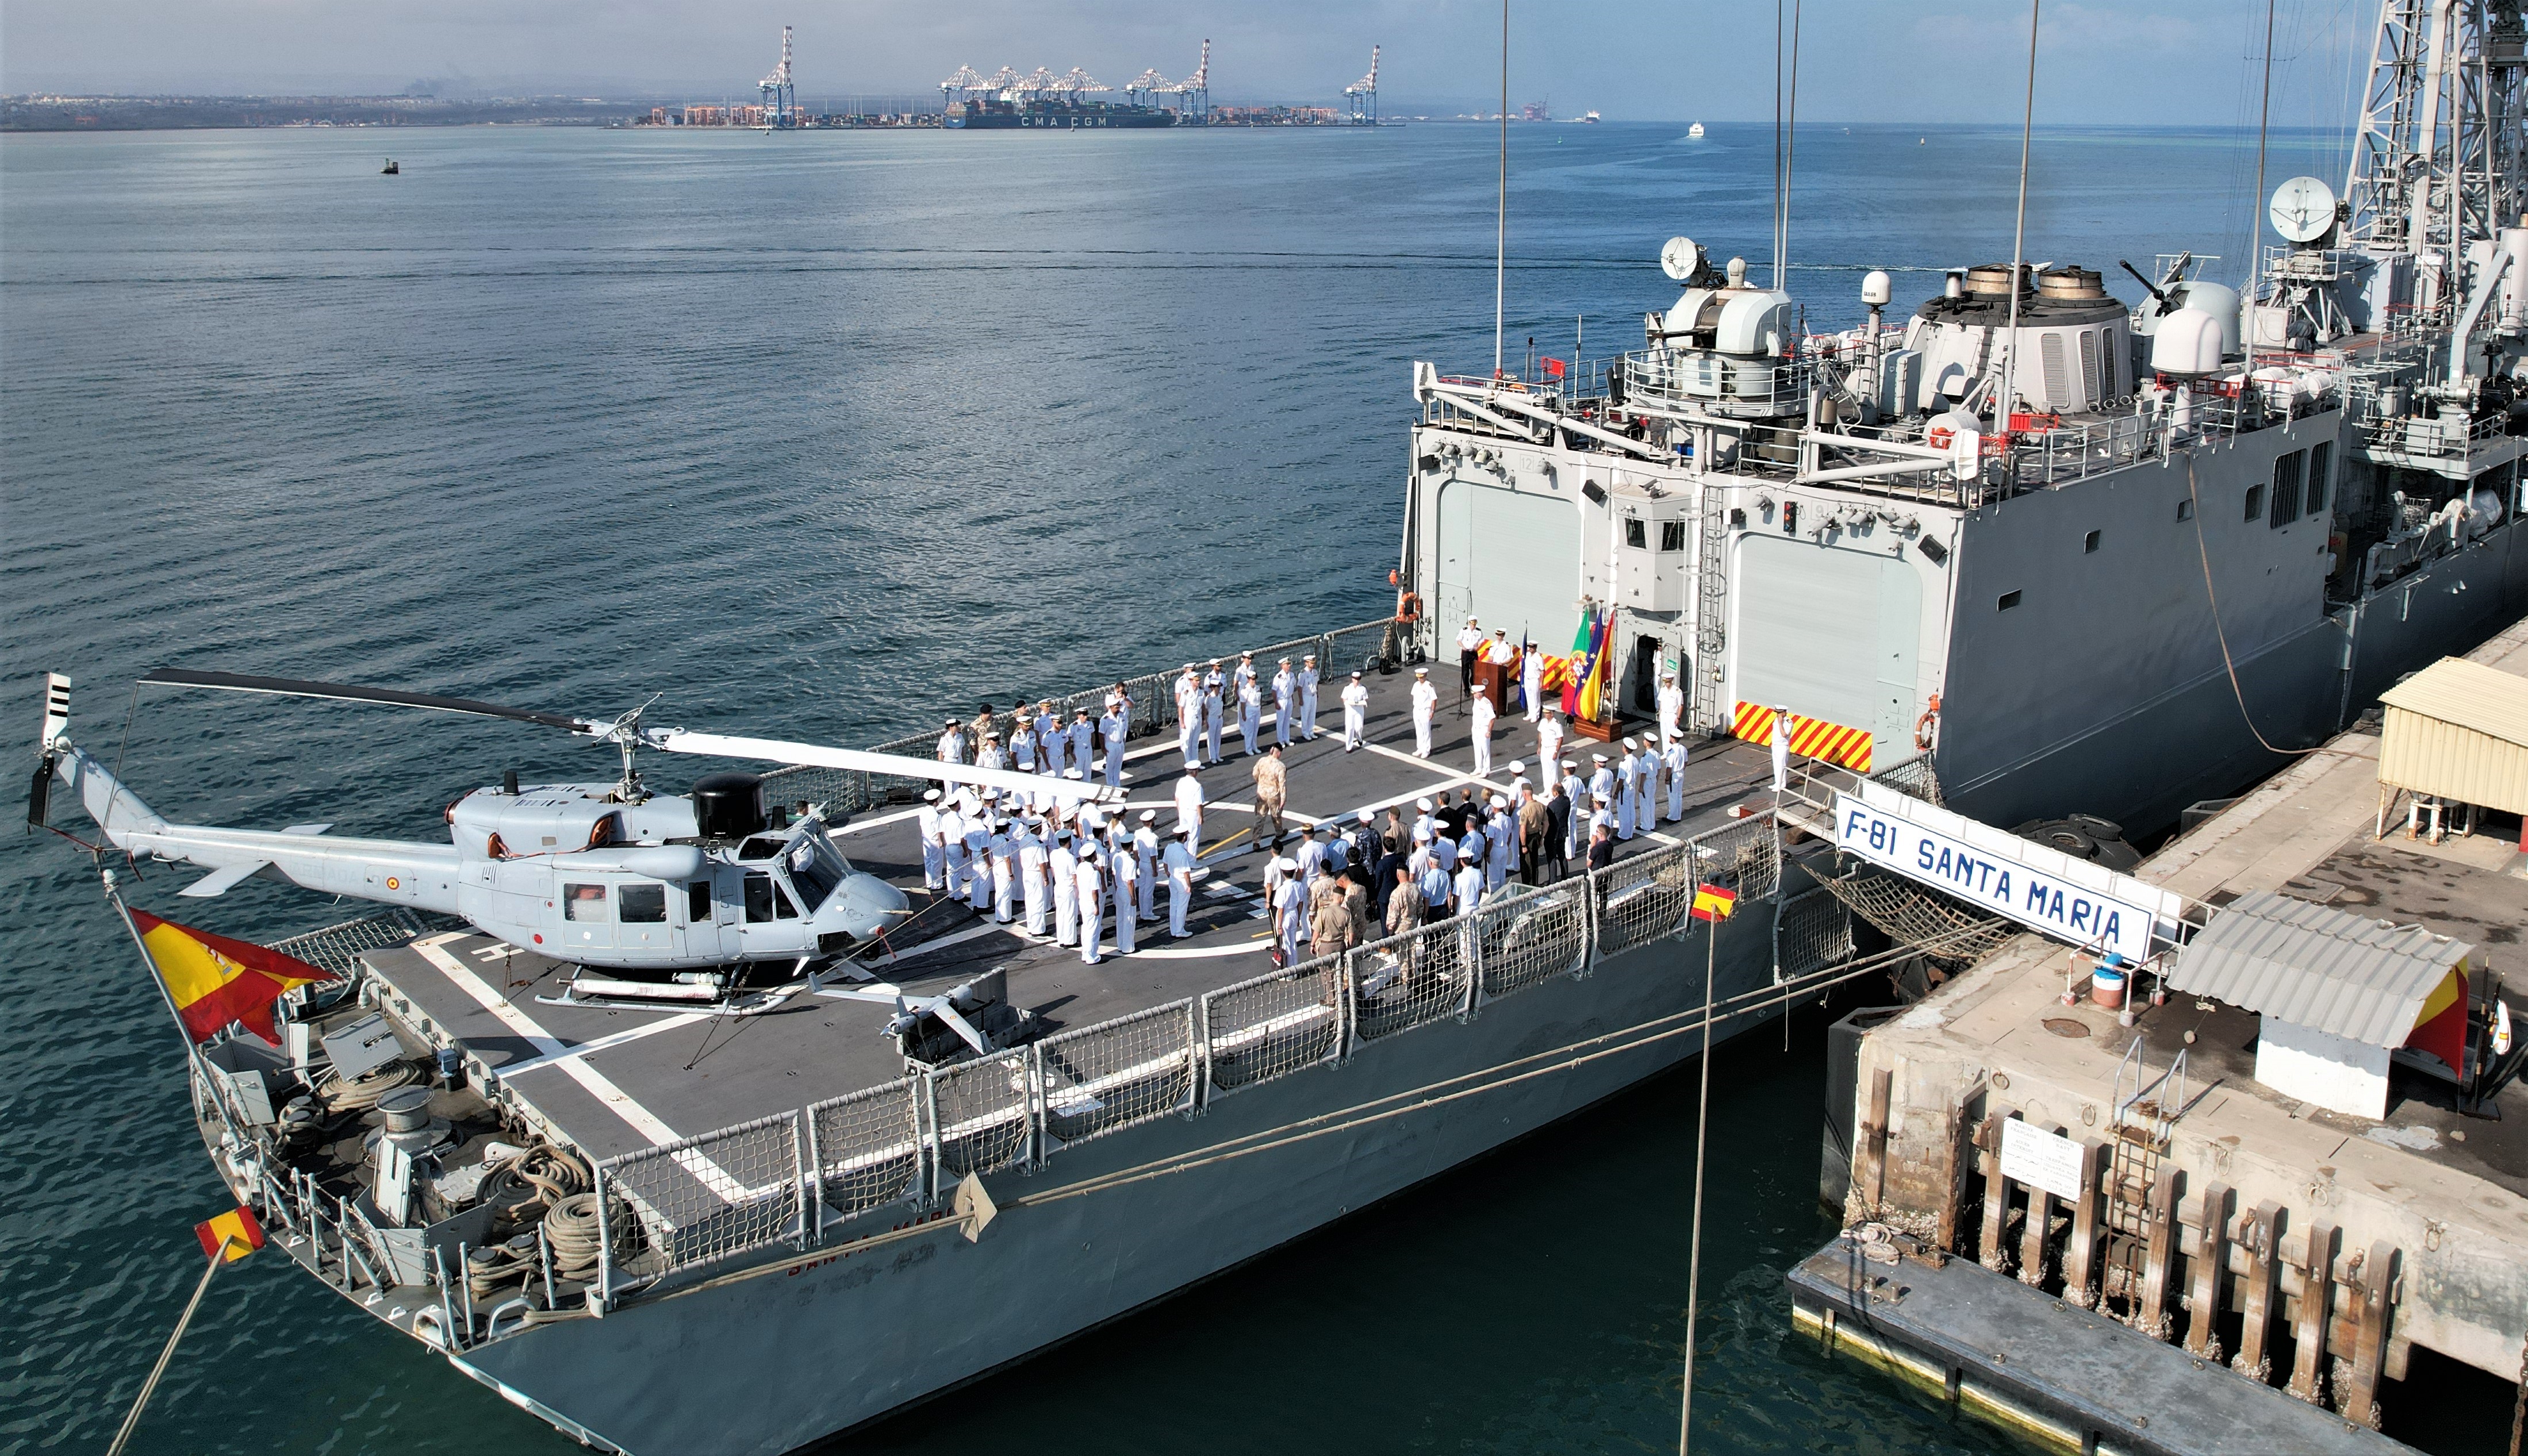 'Santa Maria' docked in Djibouti